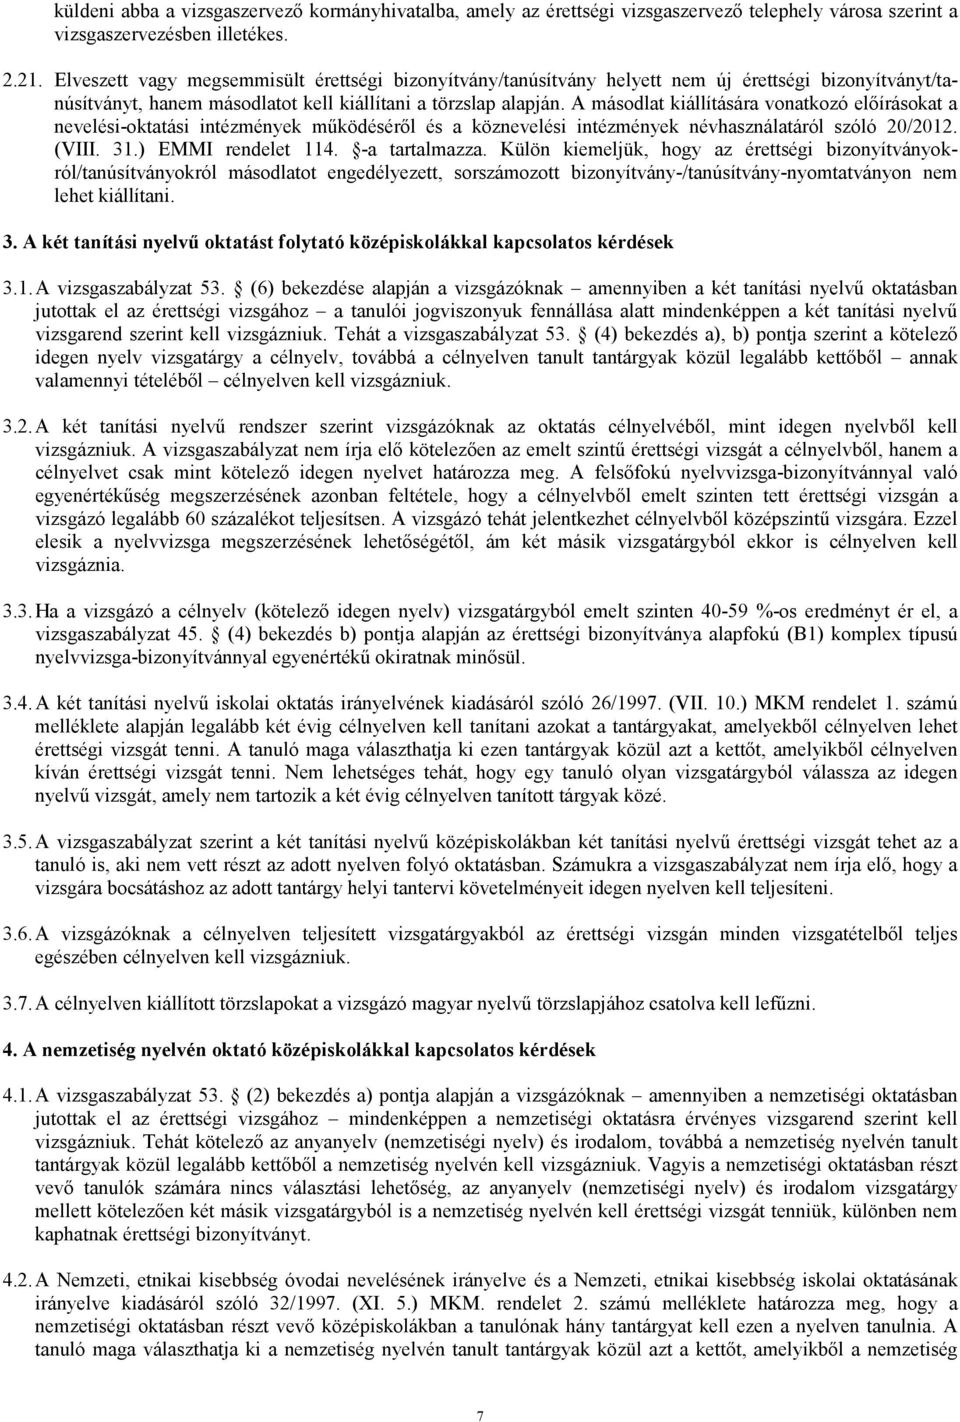 A másodlat kiállítására vonatkozó elıírásokat a nevelési-oktatási intézmények mőködésérıl és a köznevelési intézmények névhasználatáról szóló 20/2012. (VIII. 31.) EMMI rendelet 114. -a tartalmazza.